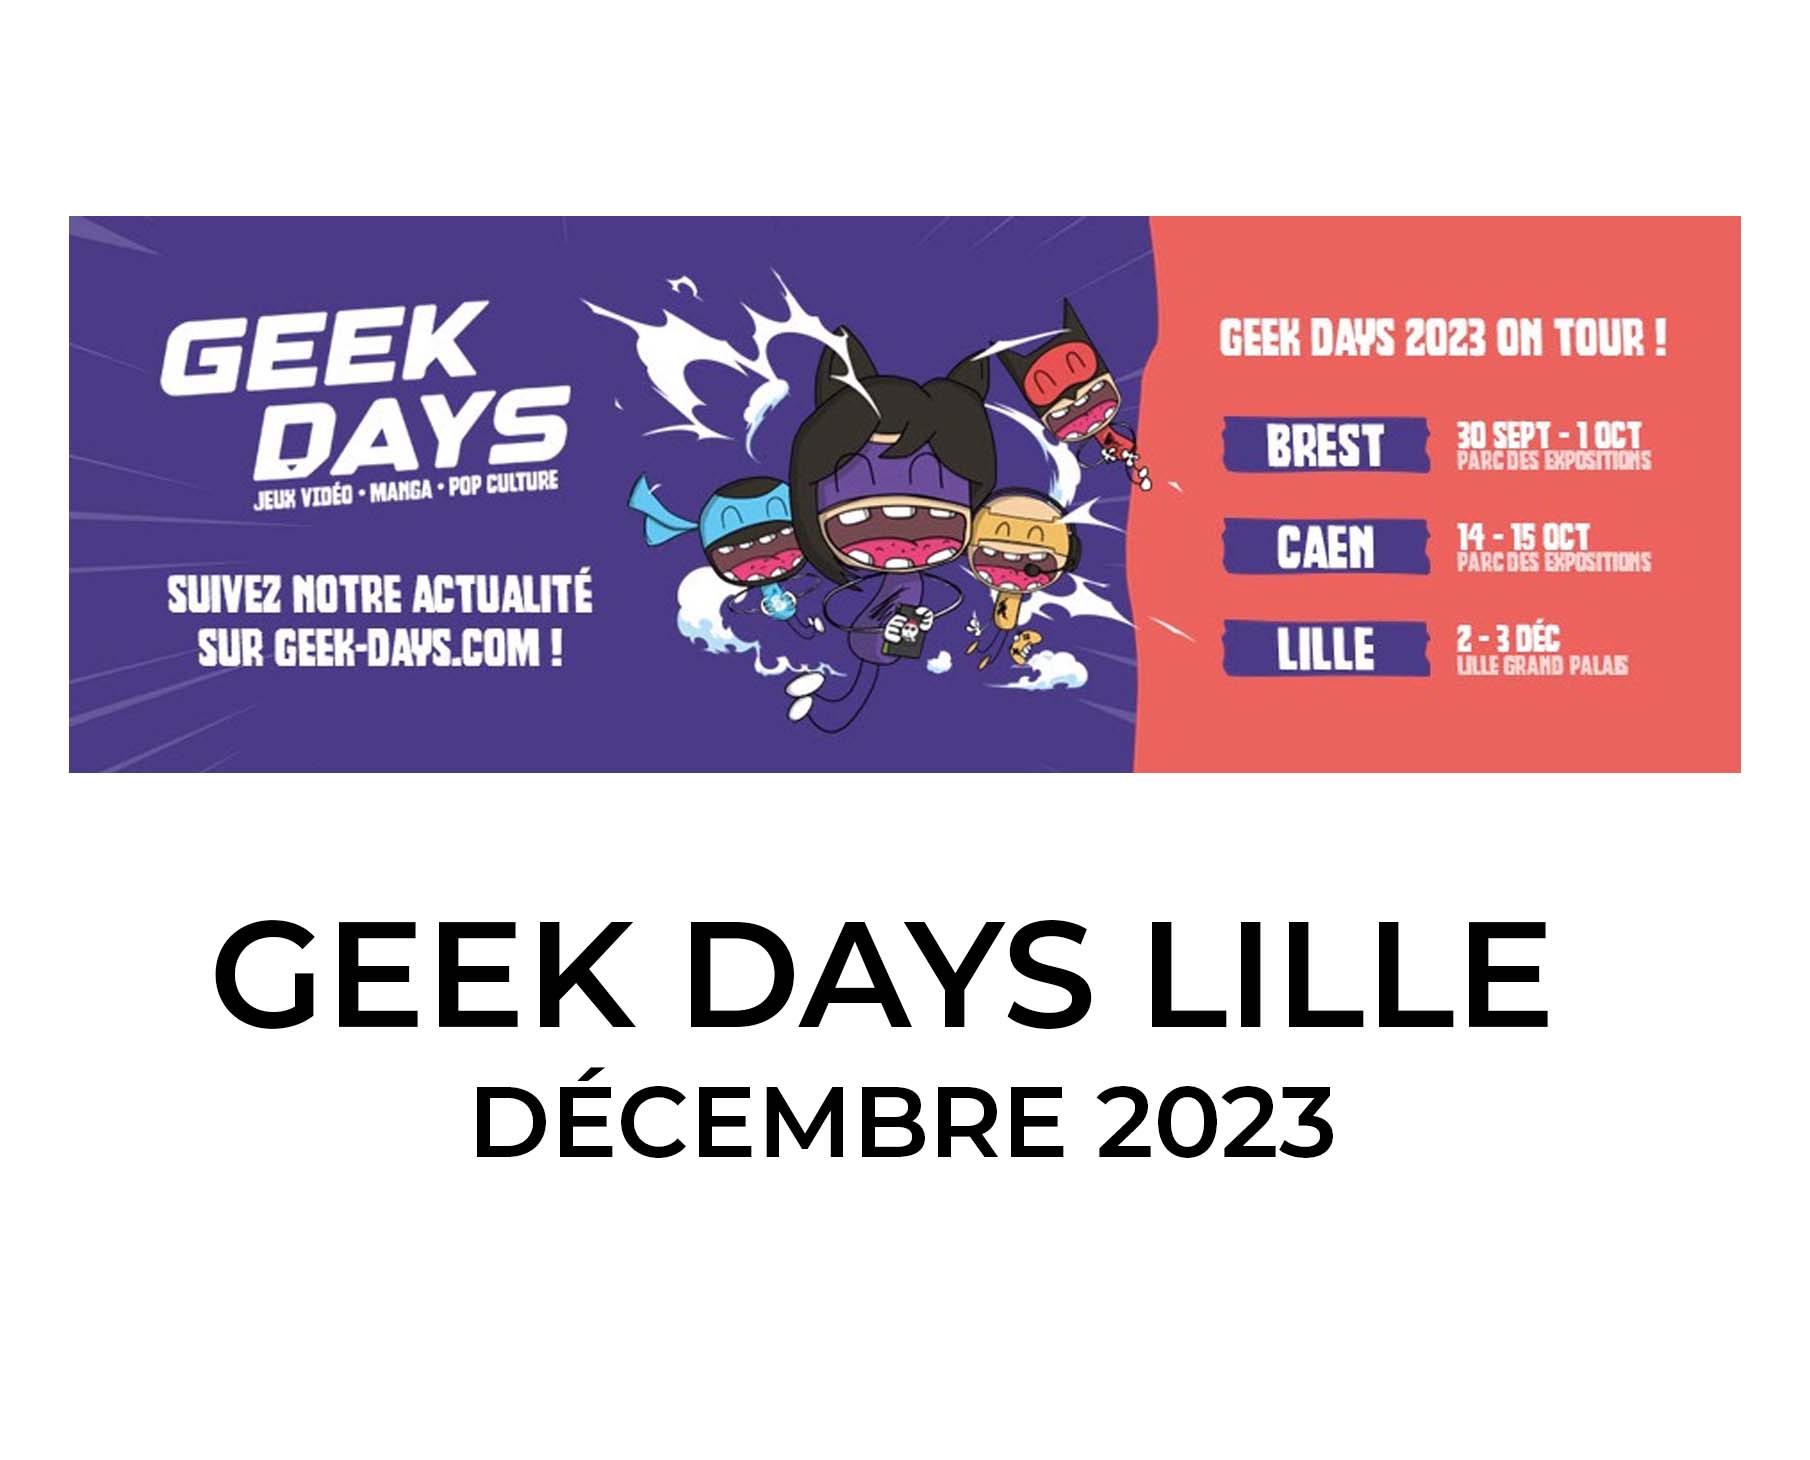 Les Geek Days de Lille